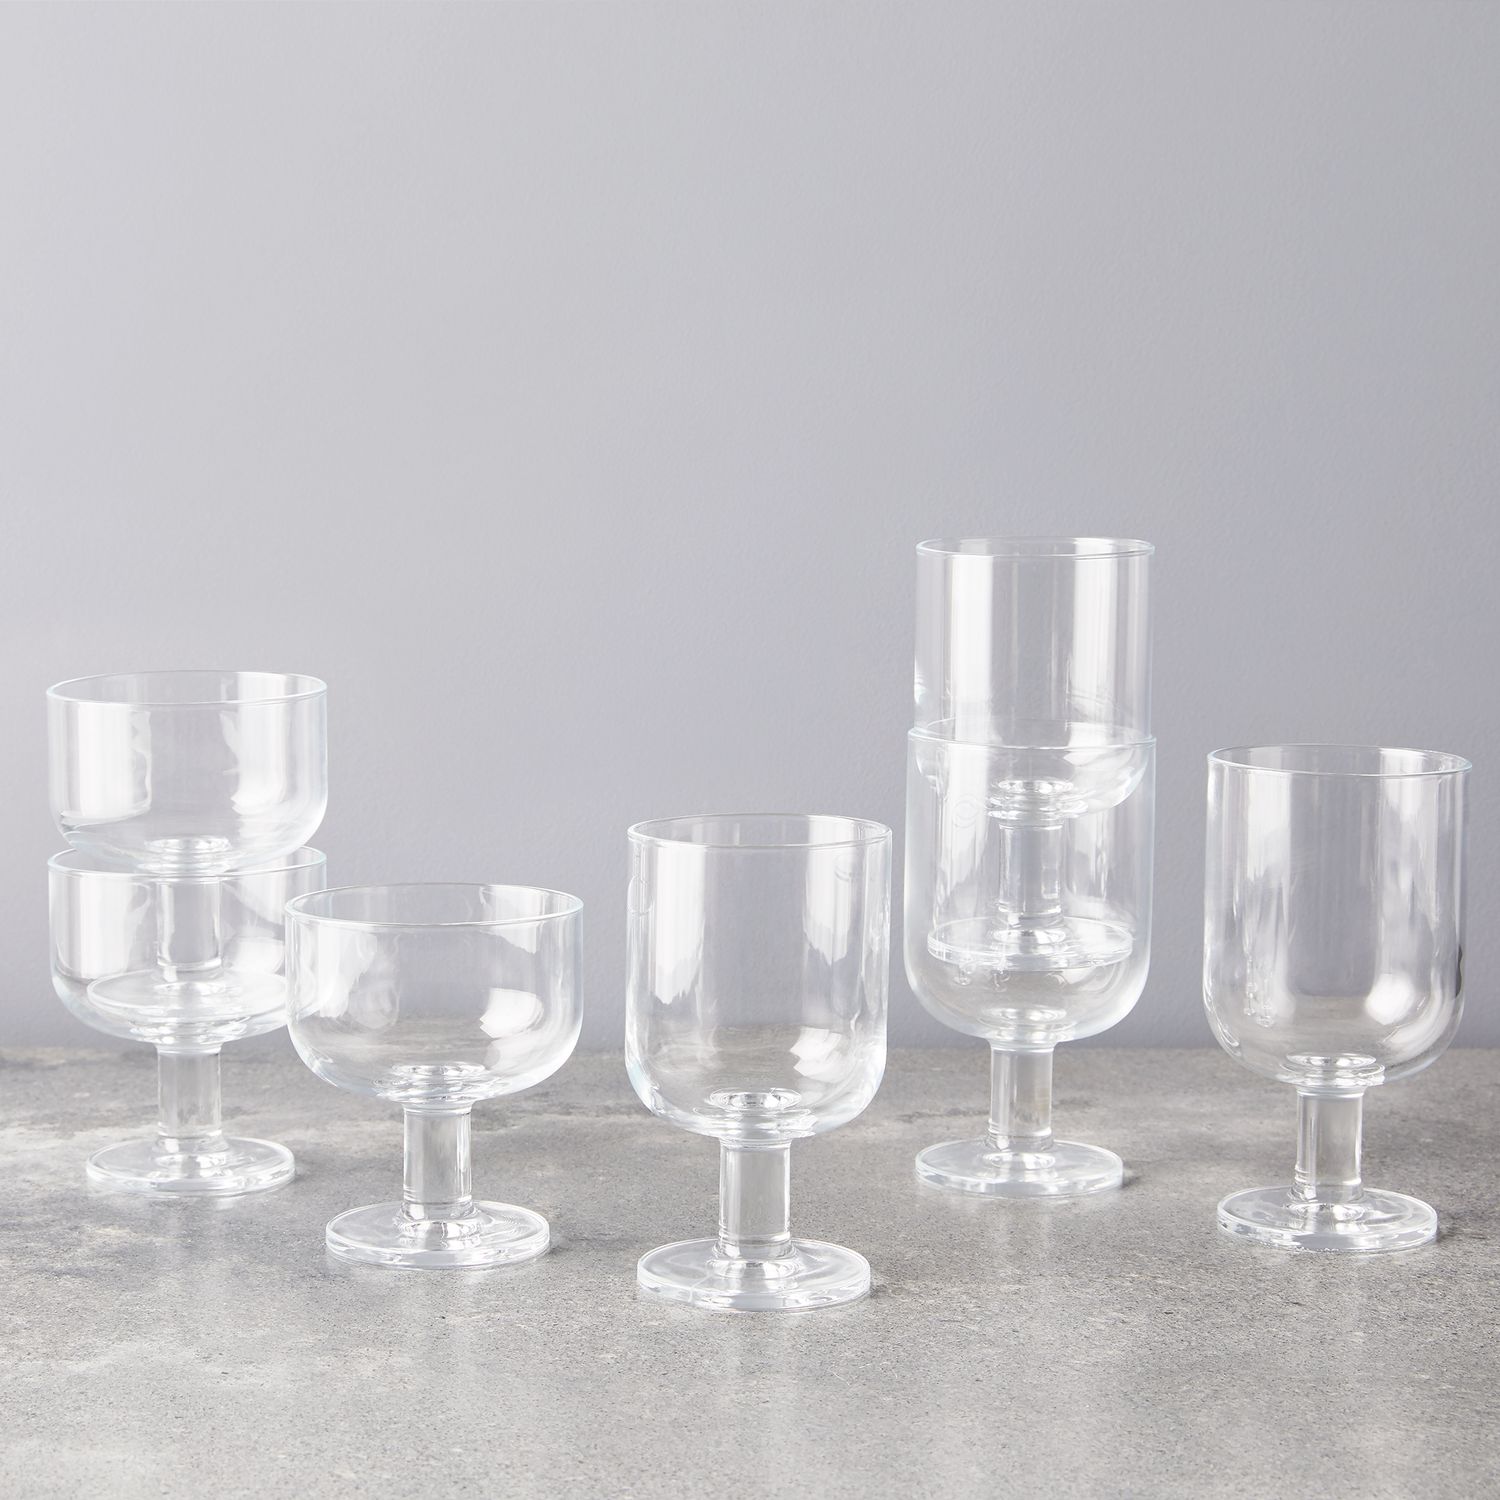 Luigi Bormioli Italian Glassware for Wine & Cocktails (Set of 4), 8 Styles  on Food52